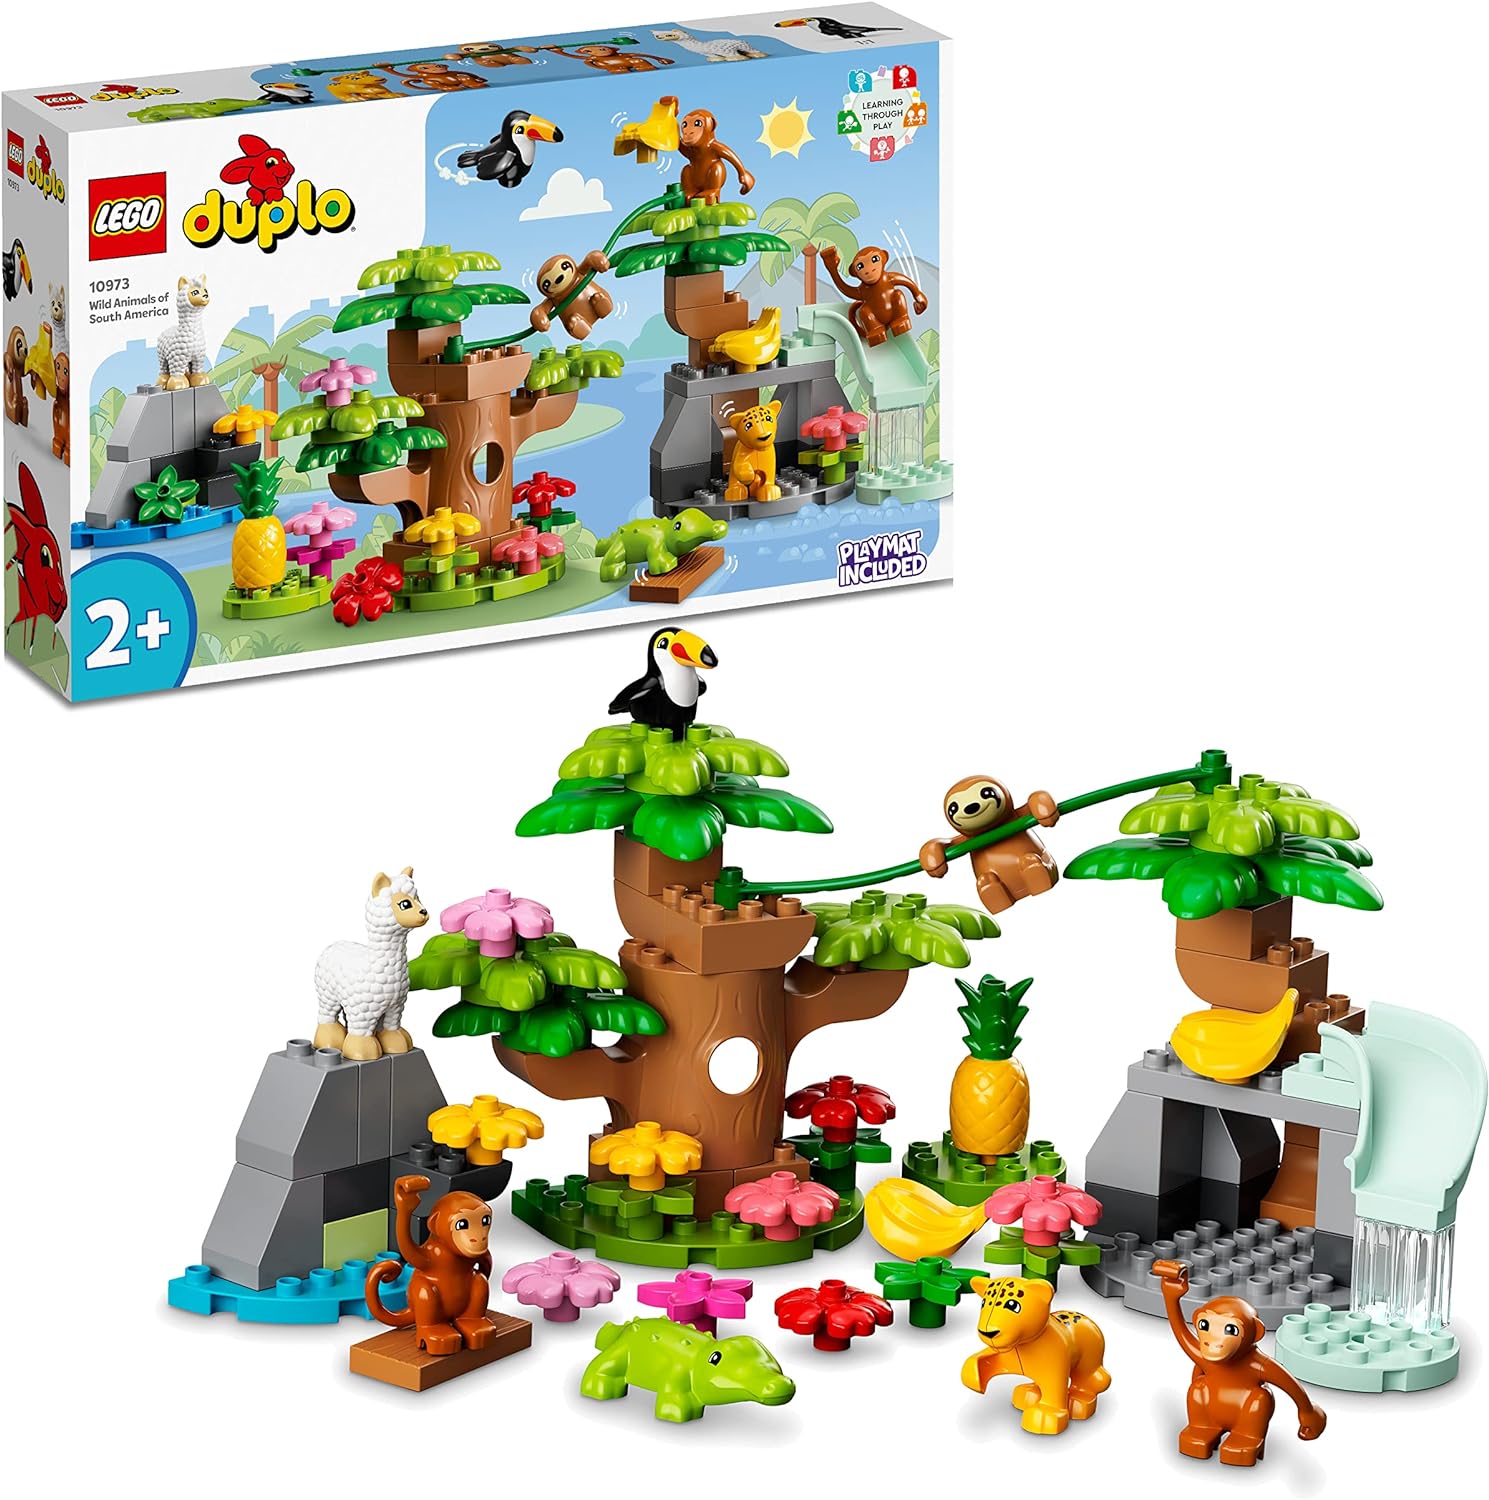 LEGO 10973 DUPLO Wilde Tiere Südamerikas Spielzeug-Set mit Tierfiguren Steine Dschungel-Spielmatte Lernspielzeug LEGO-Bausteine LEGO-Sets LEGO-Steine Bausteine Sets